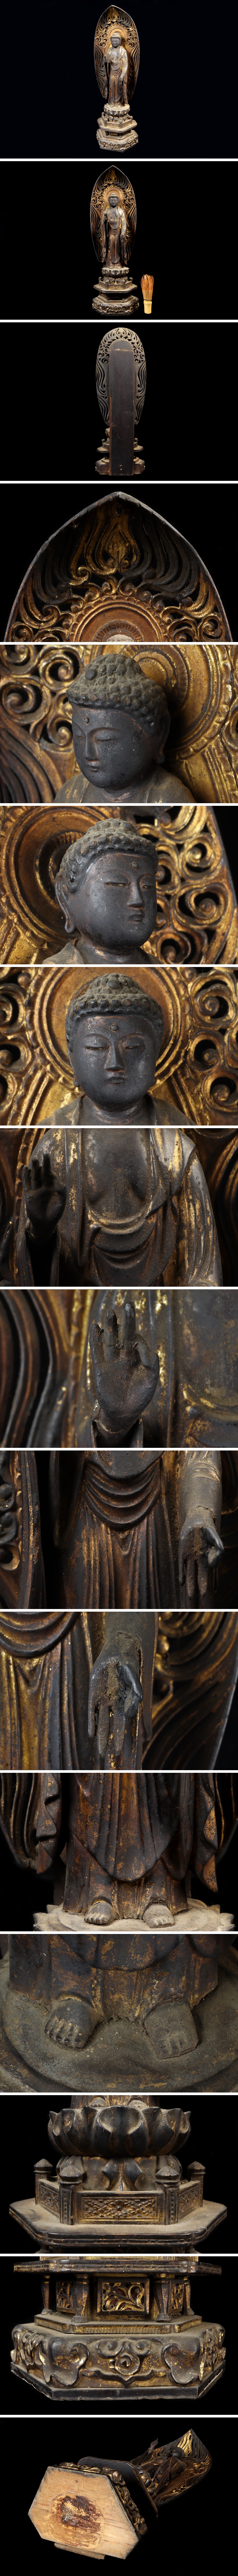 【純正早割】室町時代 木彫 鍍金 玉眼入 釈迦如来立像 仏像 置物 仏教美術 骨董品 美術品 1232tbx 仏像